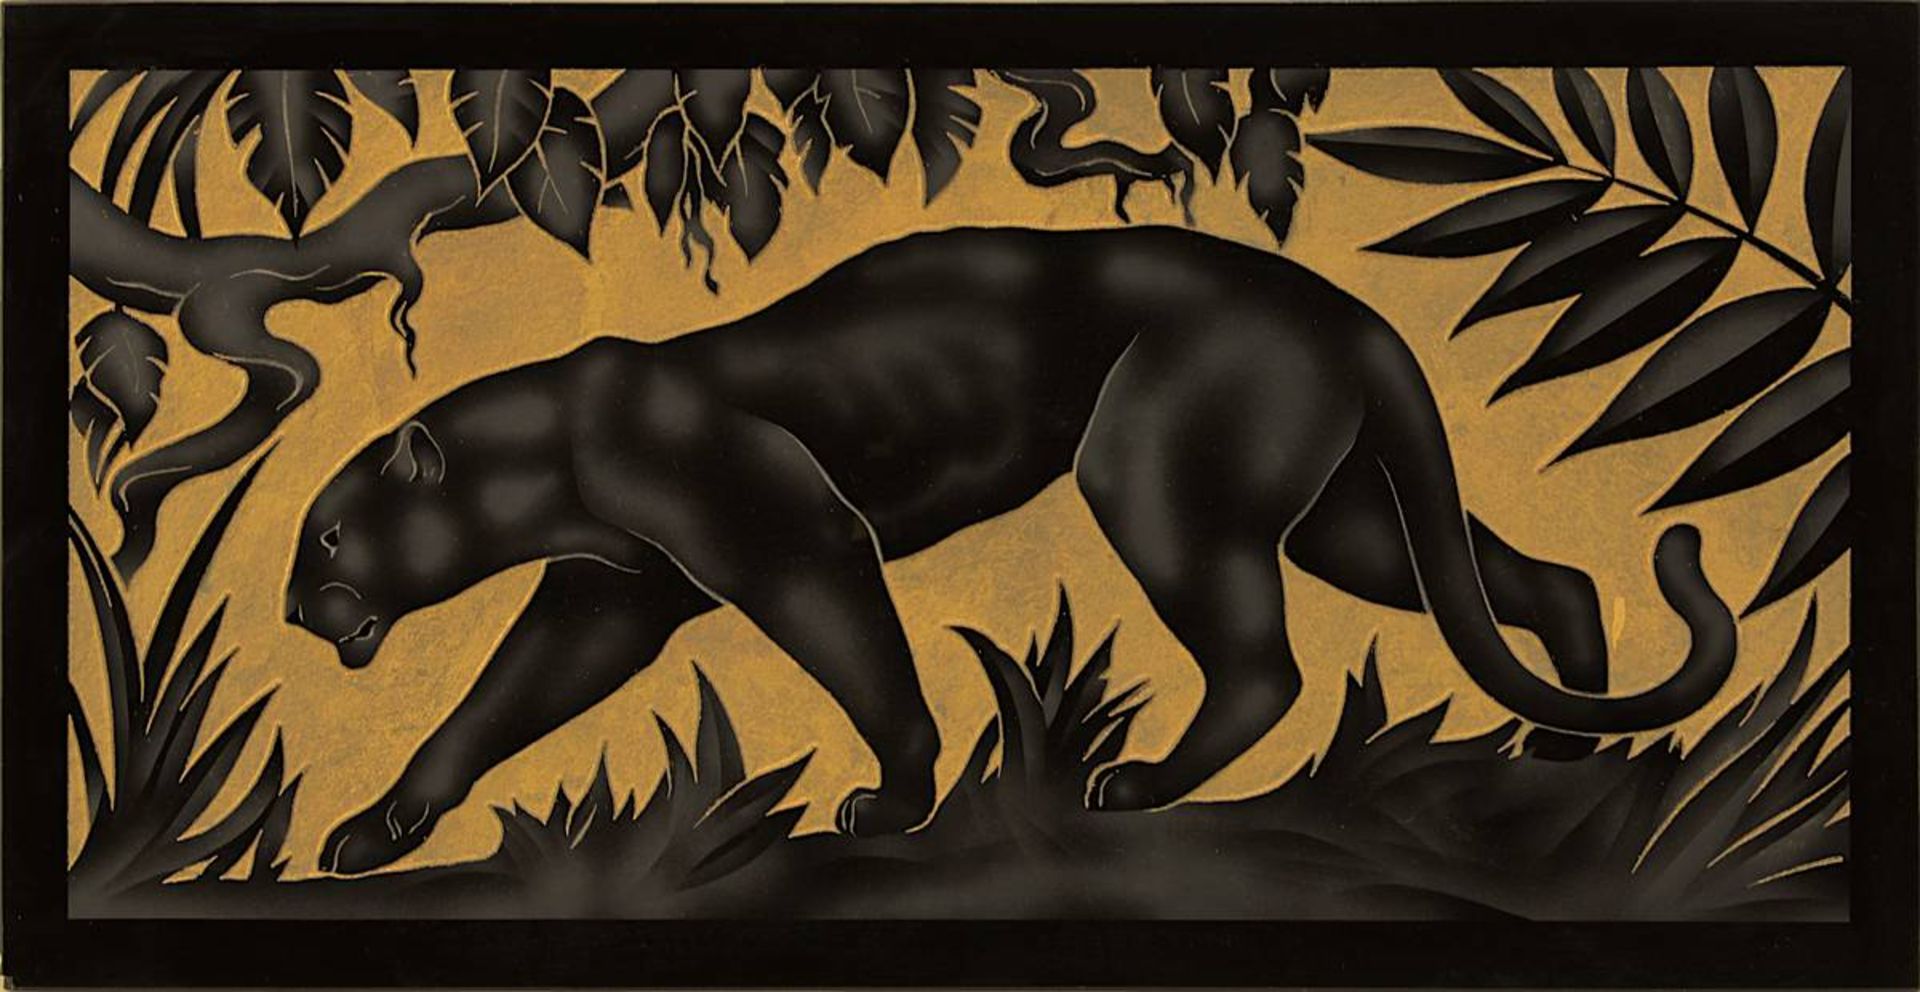 Art Déco Glasrelief mit Pantherdarstellung, wohl Möbeleinlage oder Einsatz, Frankreich um 1920,